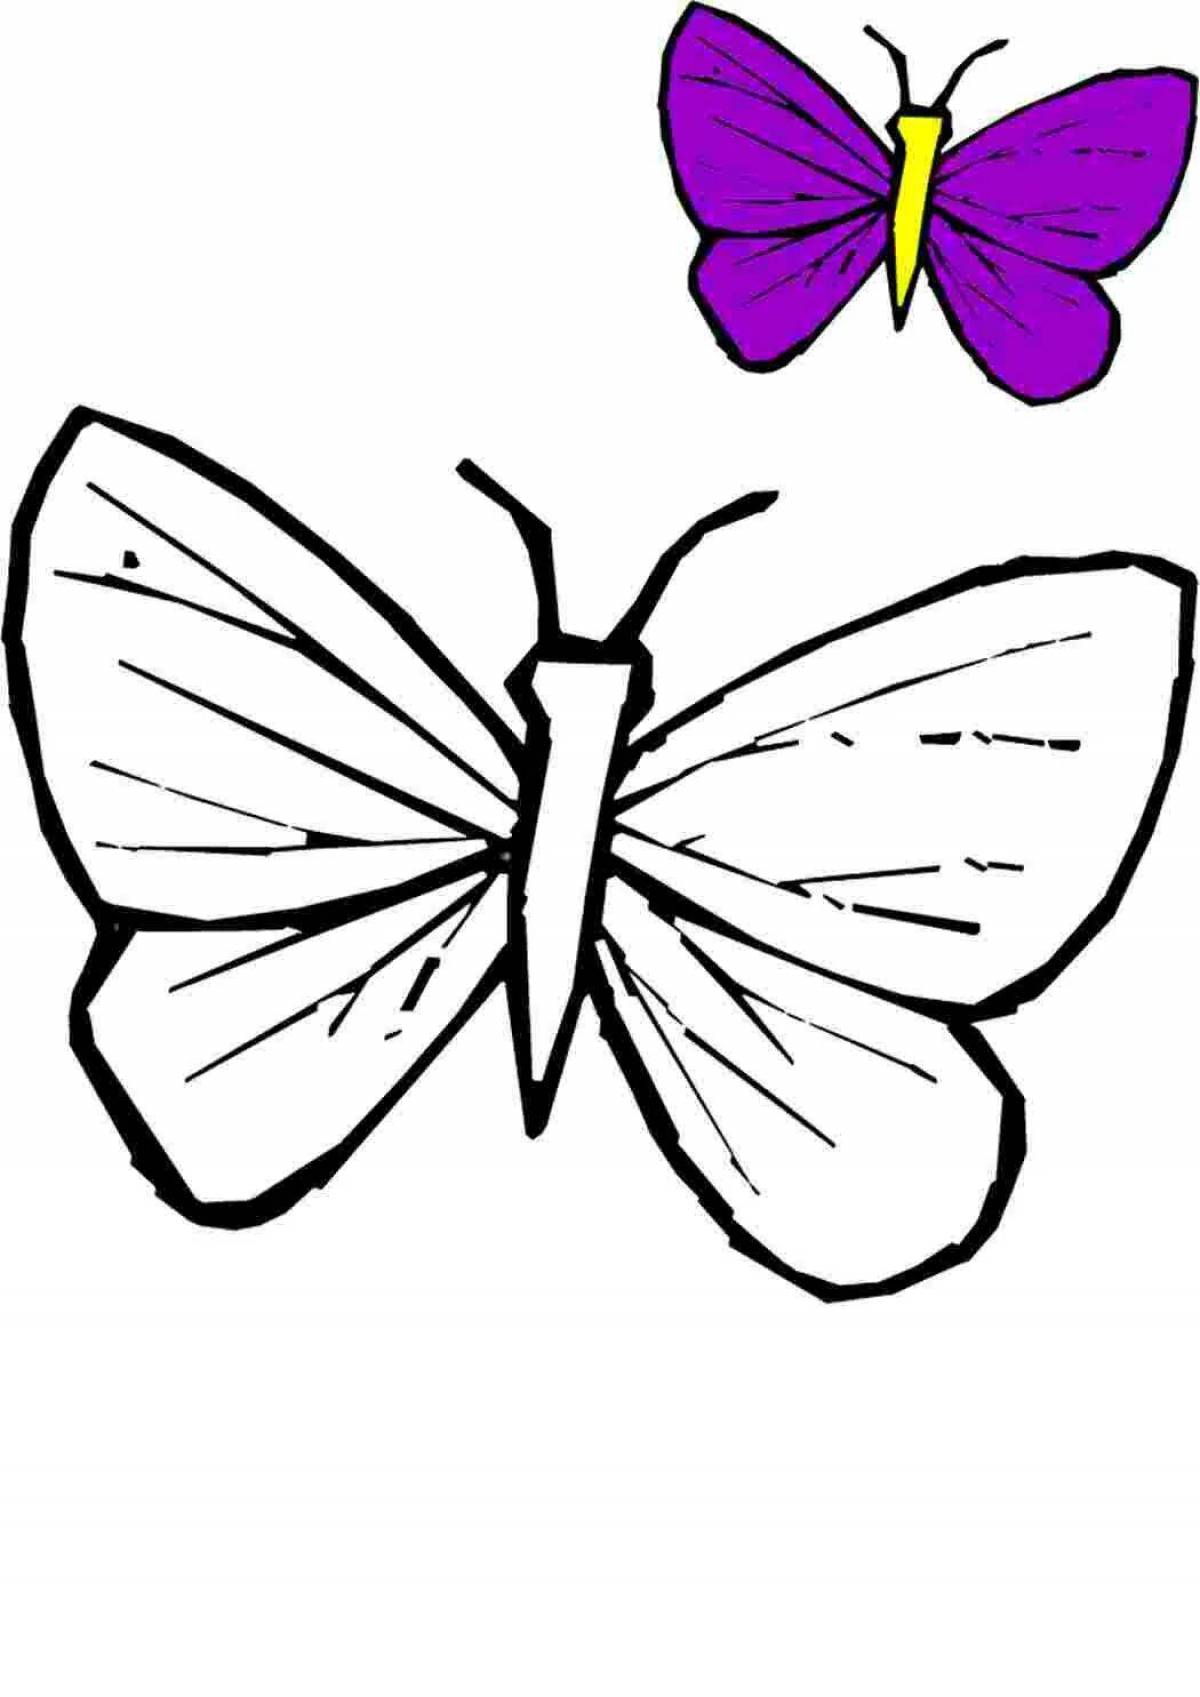 Раскраска 2 бабочки. Бабочка раскраска для детей. Бабочка раскраска для малышей. Бабочка для раскрашивания для детей. Бабочка раскраска для детей 3-4 лет.